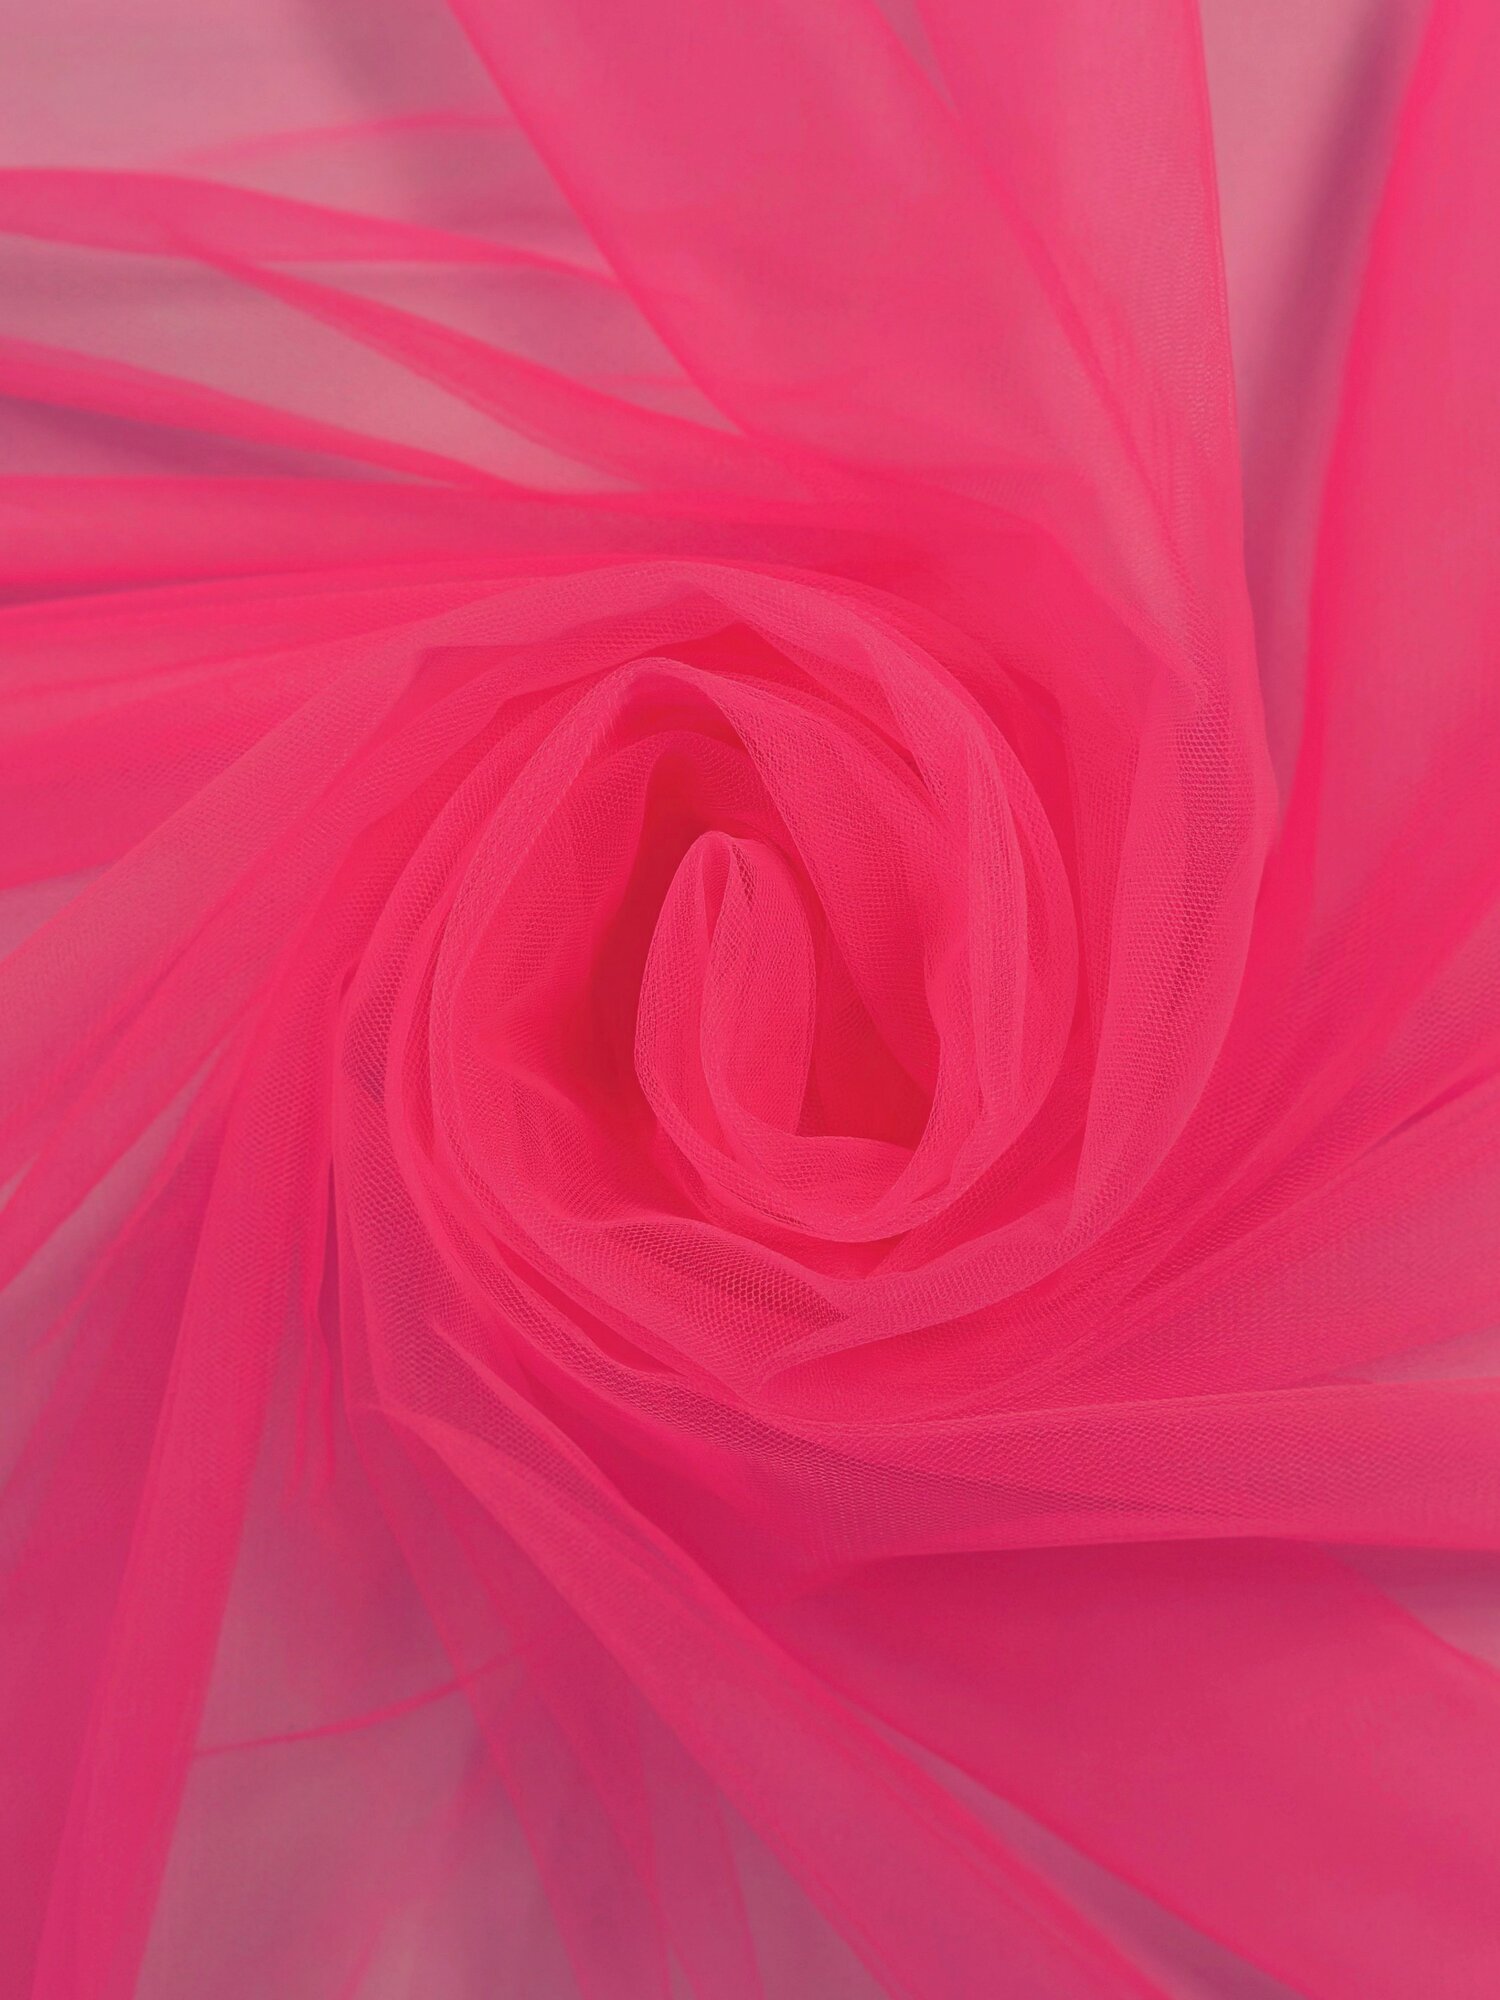 Ткань Фатин Еврофатин Ярко-розовый 2м x 3м